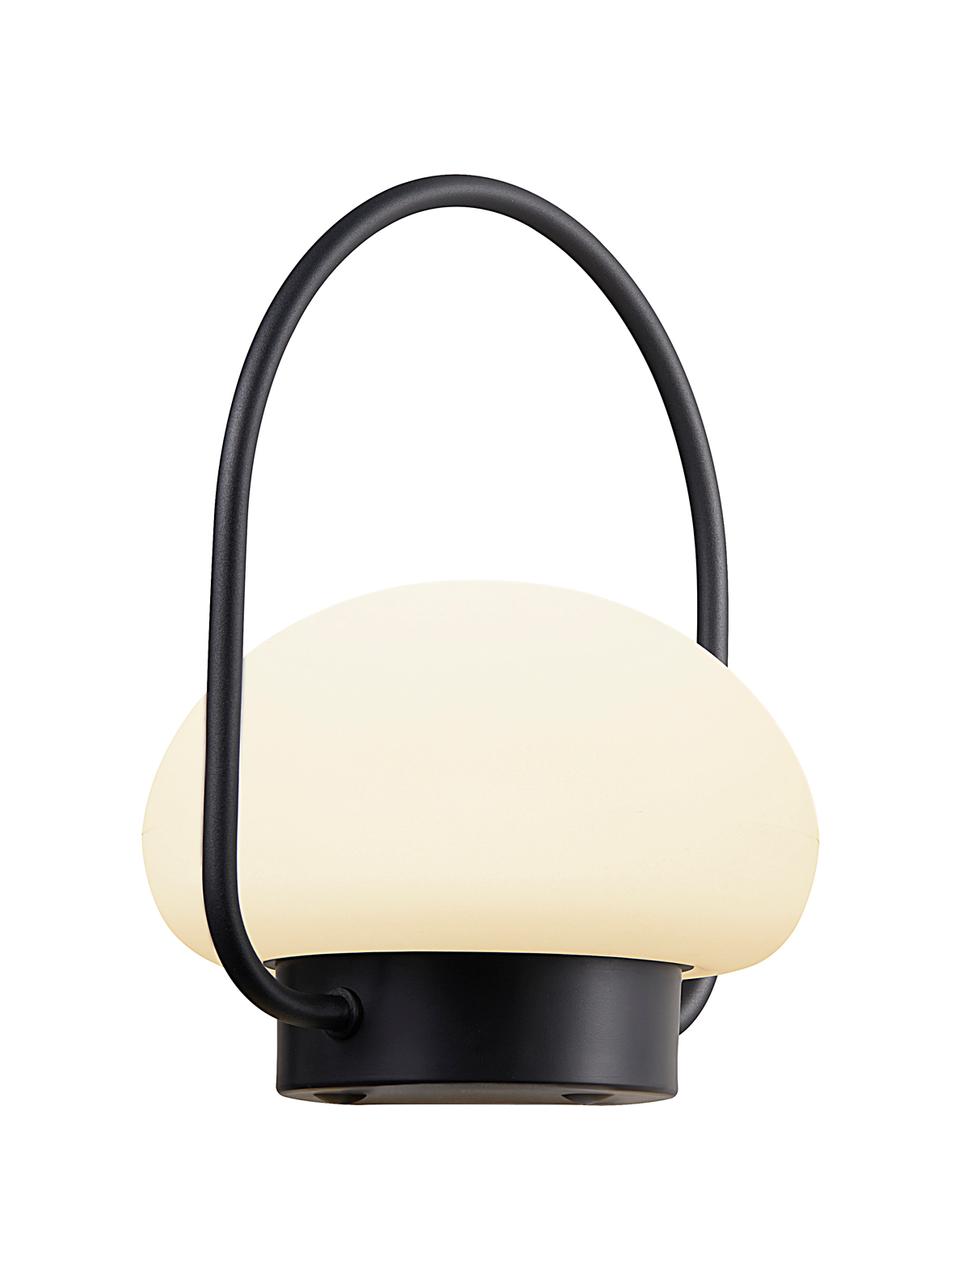 Mobiele dimbare outdoor tafellamp Sponge, Lampenkap: kunststof, Wit, zwart, Ø 23 x H 28 cm